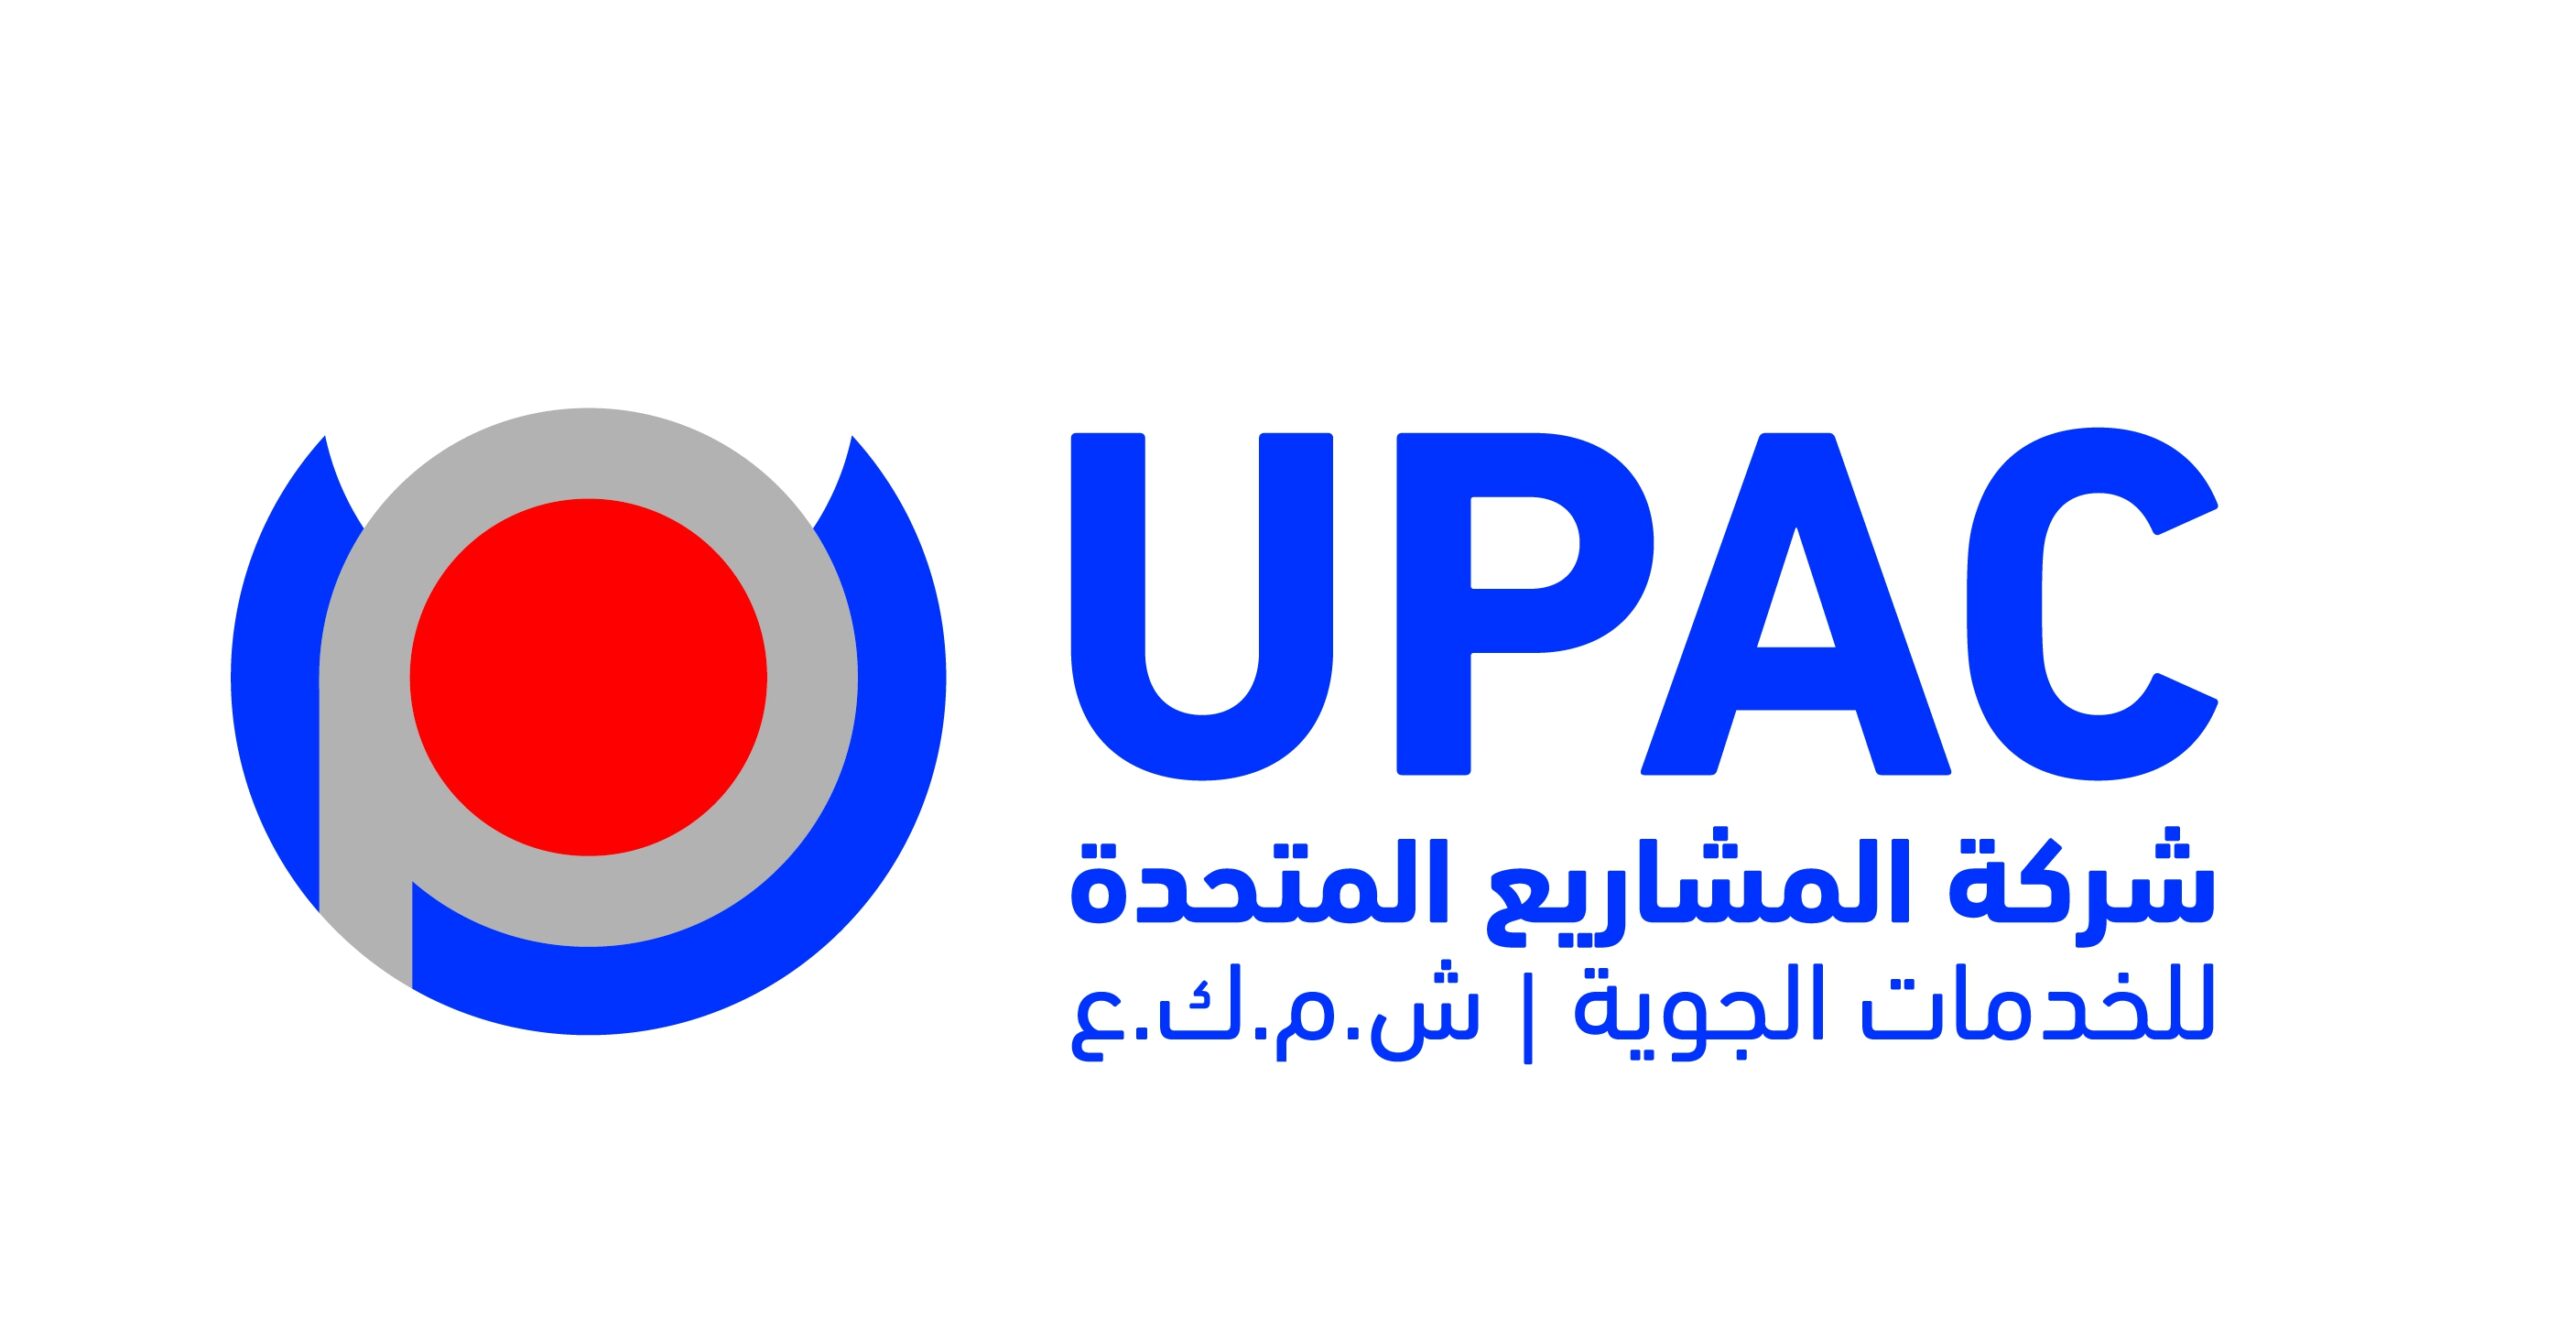 يوباك تدعم حملة اليونيسف “تبرع لحماية أطفال اليمن”